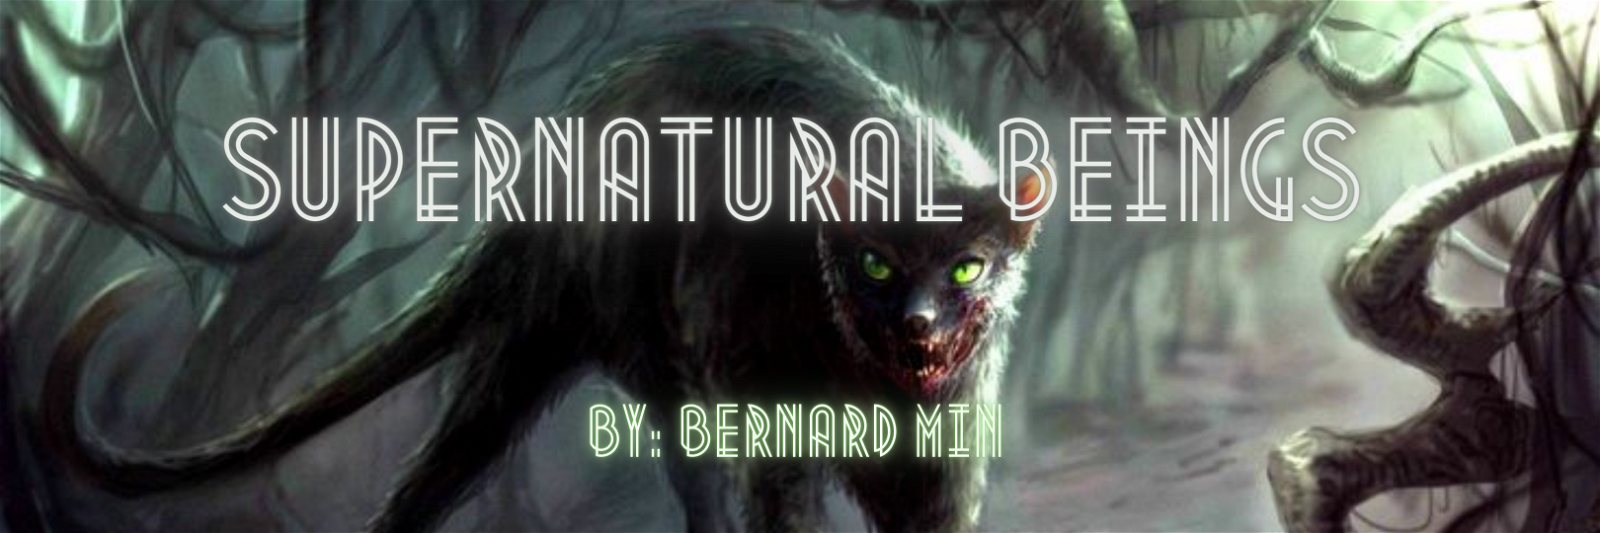 Supernatural Beings by Bernard #4